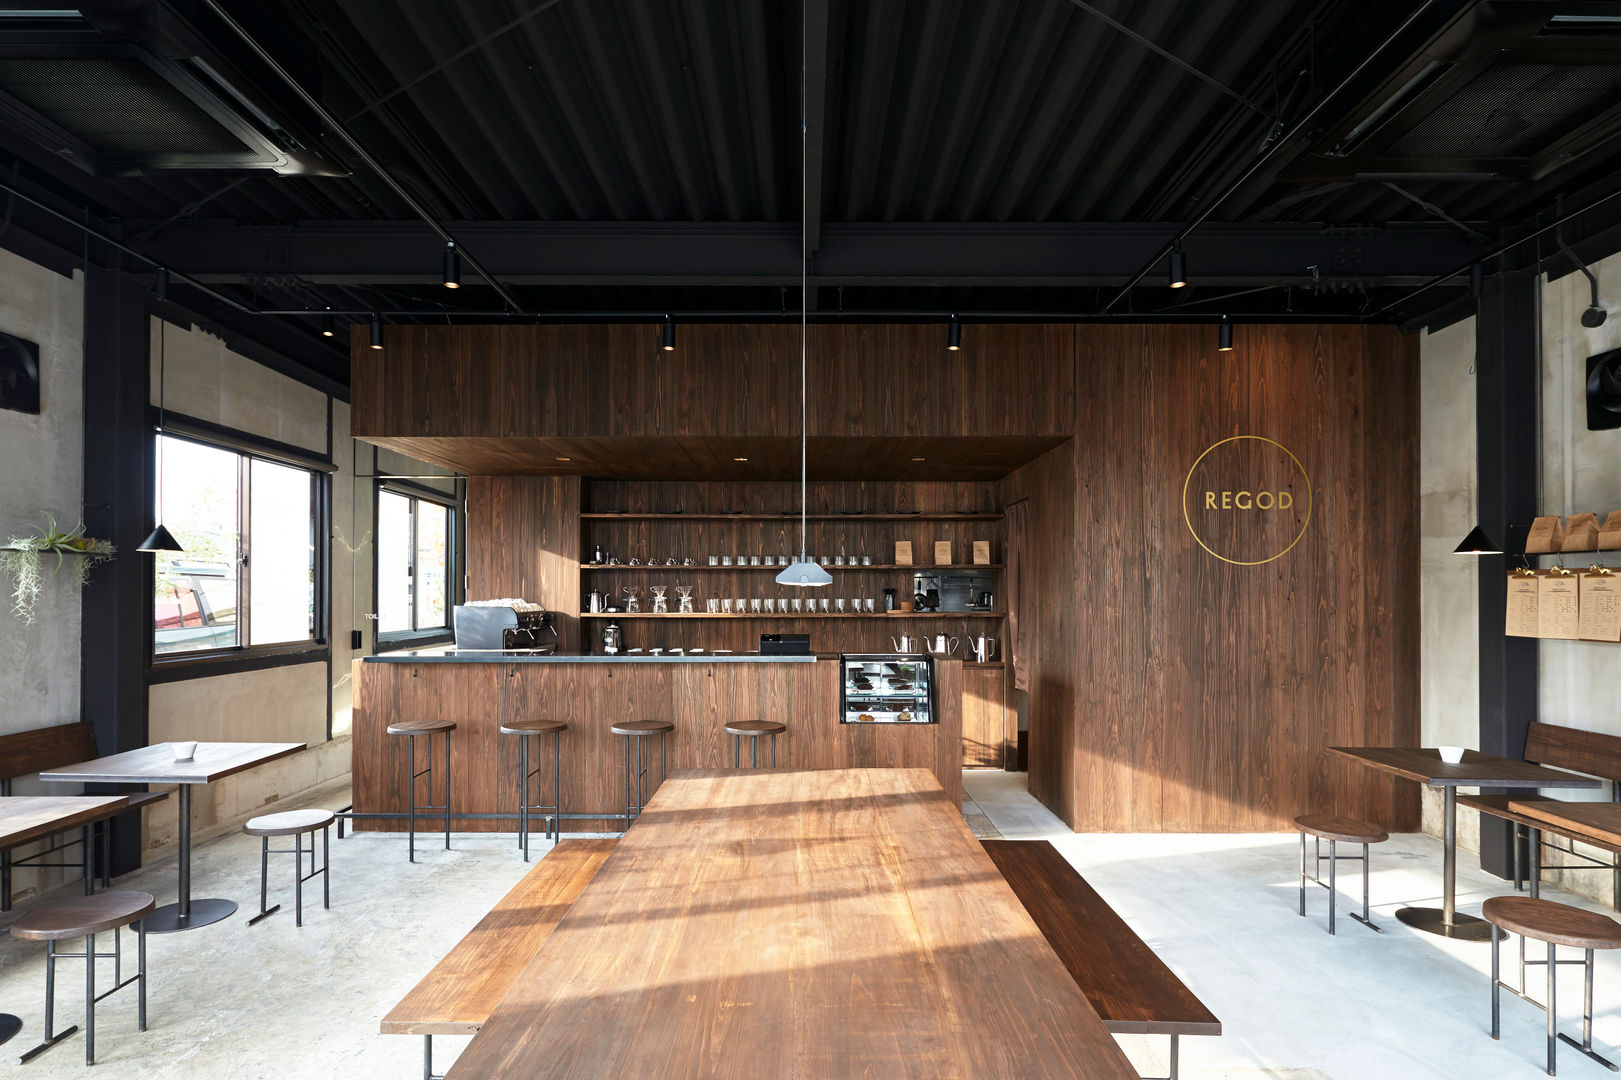 大リビングの大きなテーブル Innovation Studio Okayama 商業空間 コンクリート シンプル,モノトーン,カフェ,素材感,テーブル,キッチンカウンター,コンクリートの床,テクスチャードモノトーン,レストラン